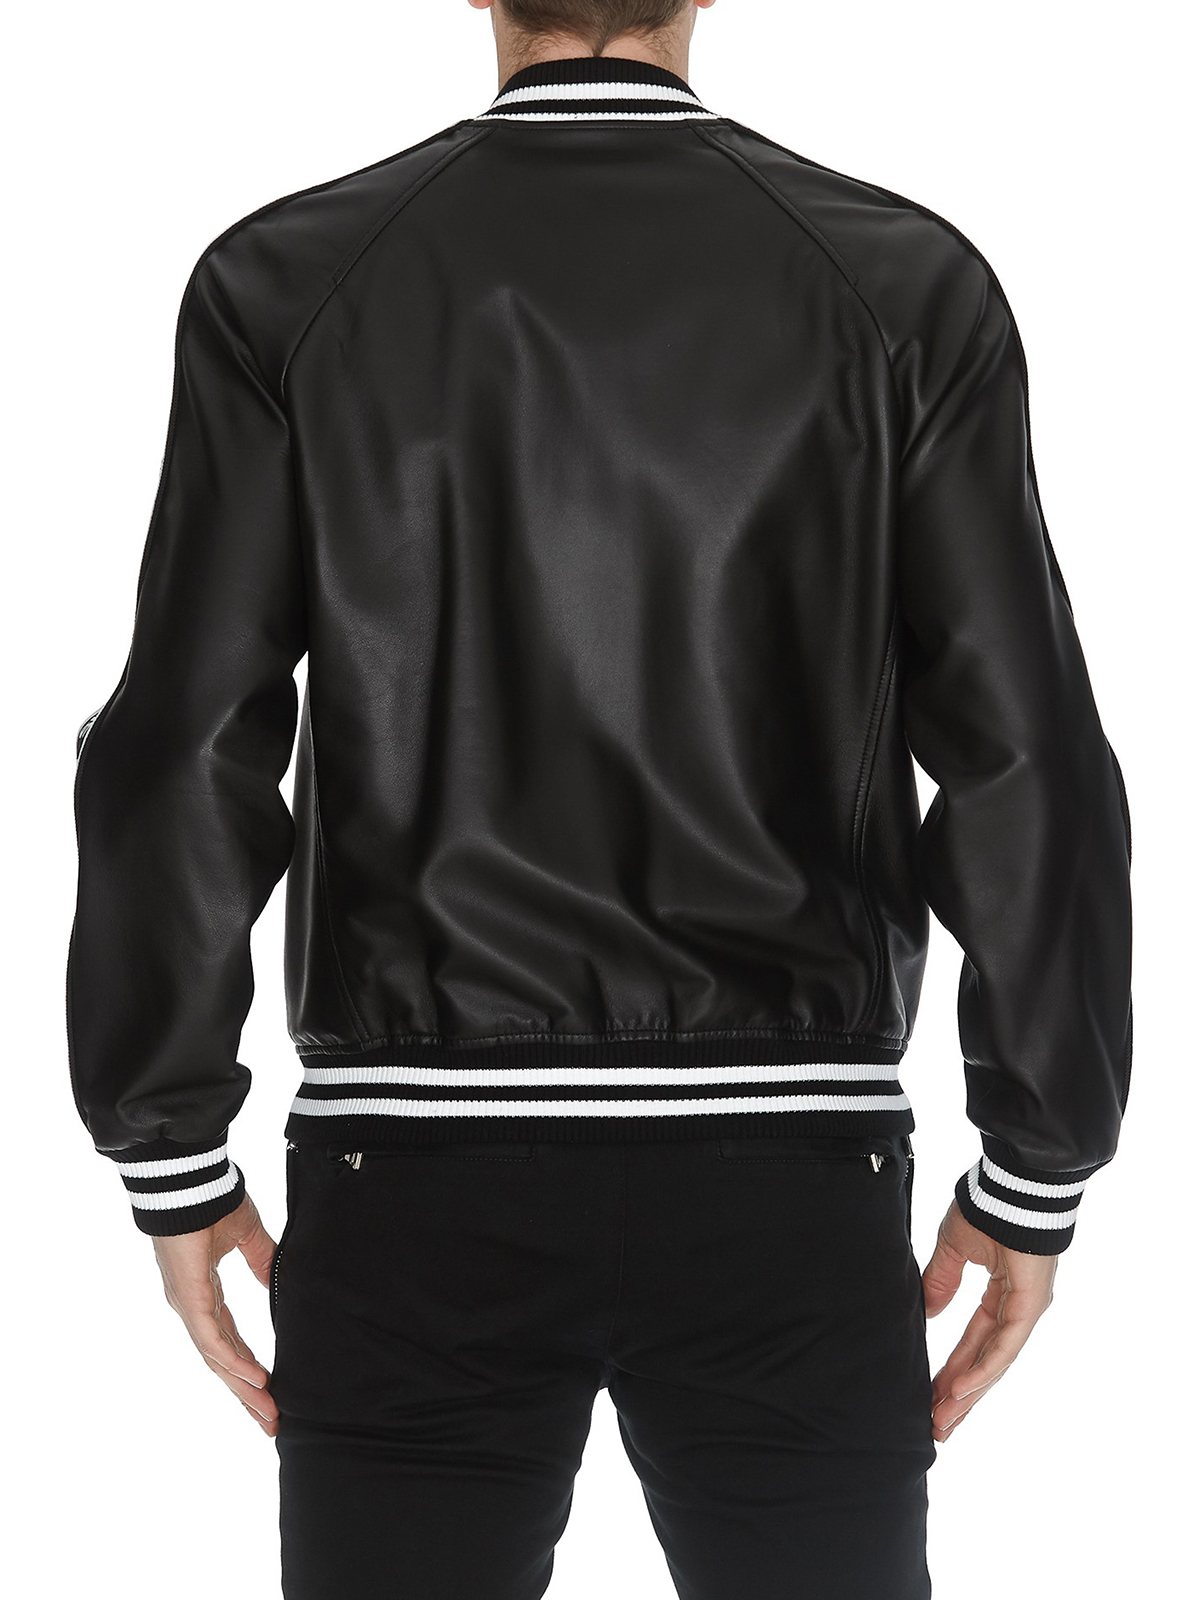 Leather jacket Balmain leather bomber jacket - RH18893L0020PA